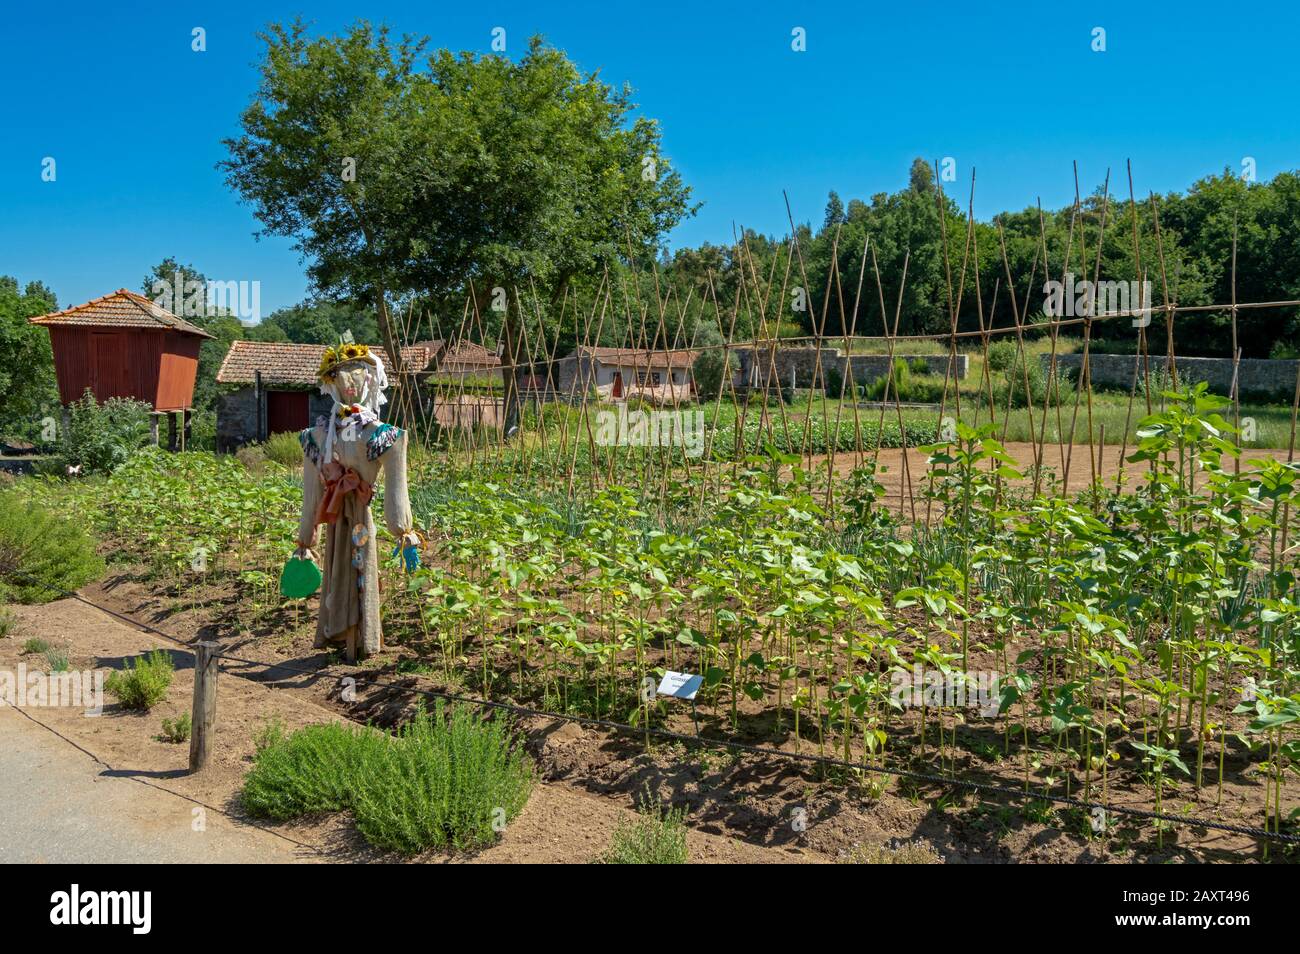 Scarecrow gardait le jardin potager de la ferme de Santo Tusso dans le parc biologique de Gaia, Portugal. Banque D'Images